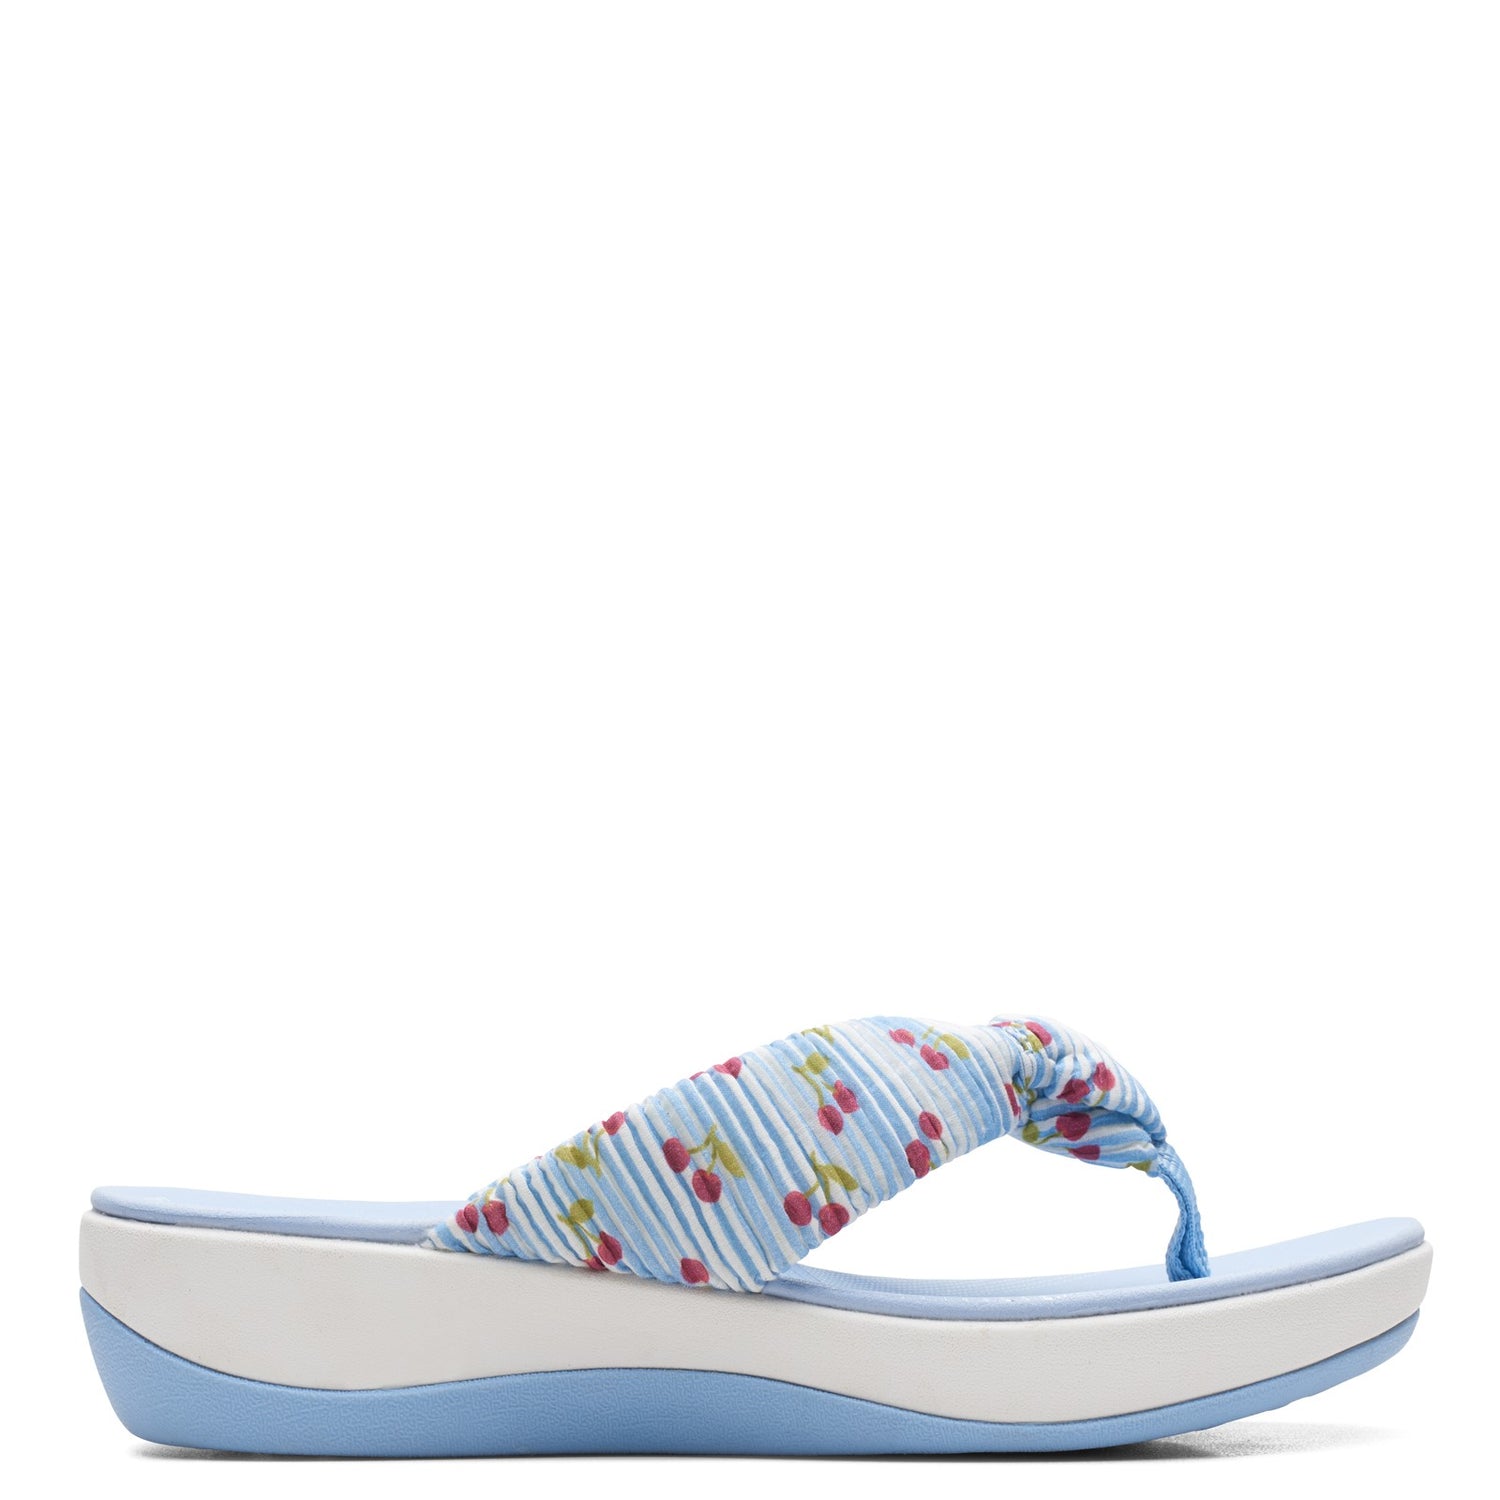 Peltz Shoes  Women's Clarks Arla Glison Sandal BLUE / CHERRIES 26164476